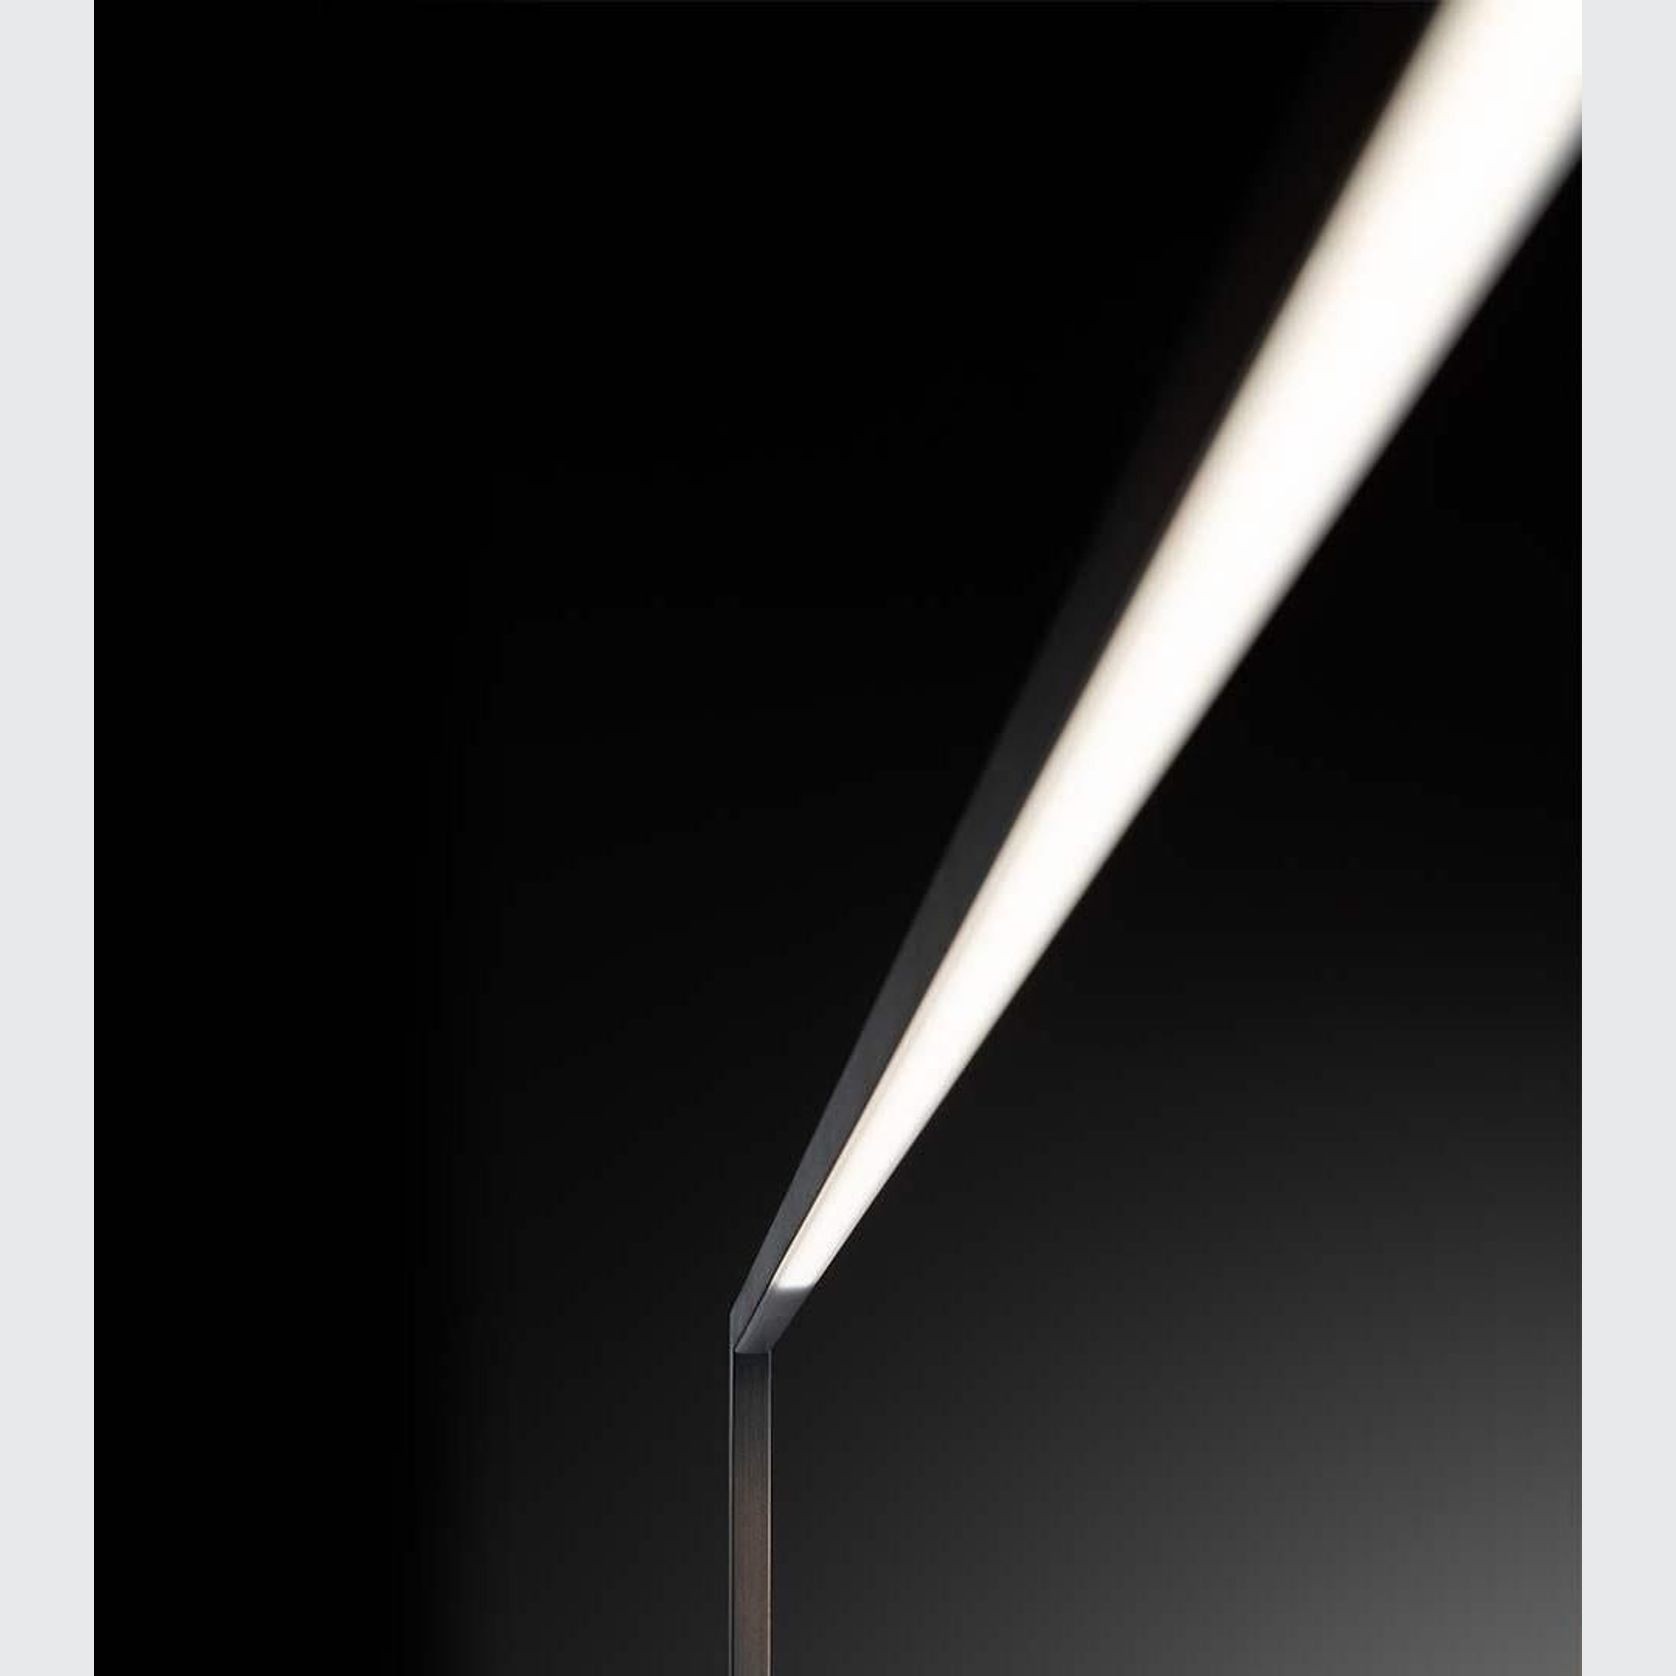 Essential Braccio Floor Lamp gallery detail image